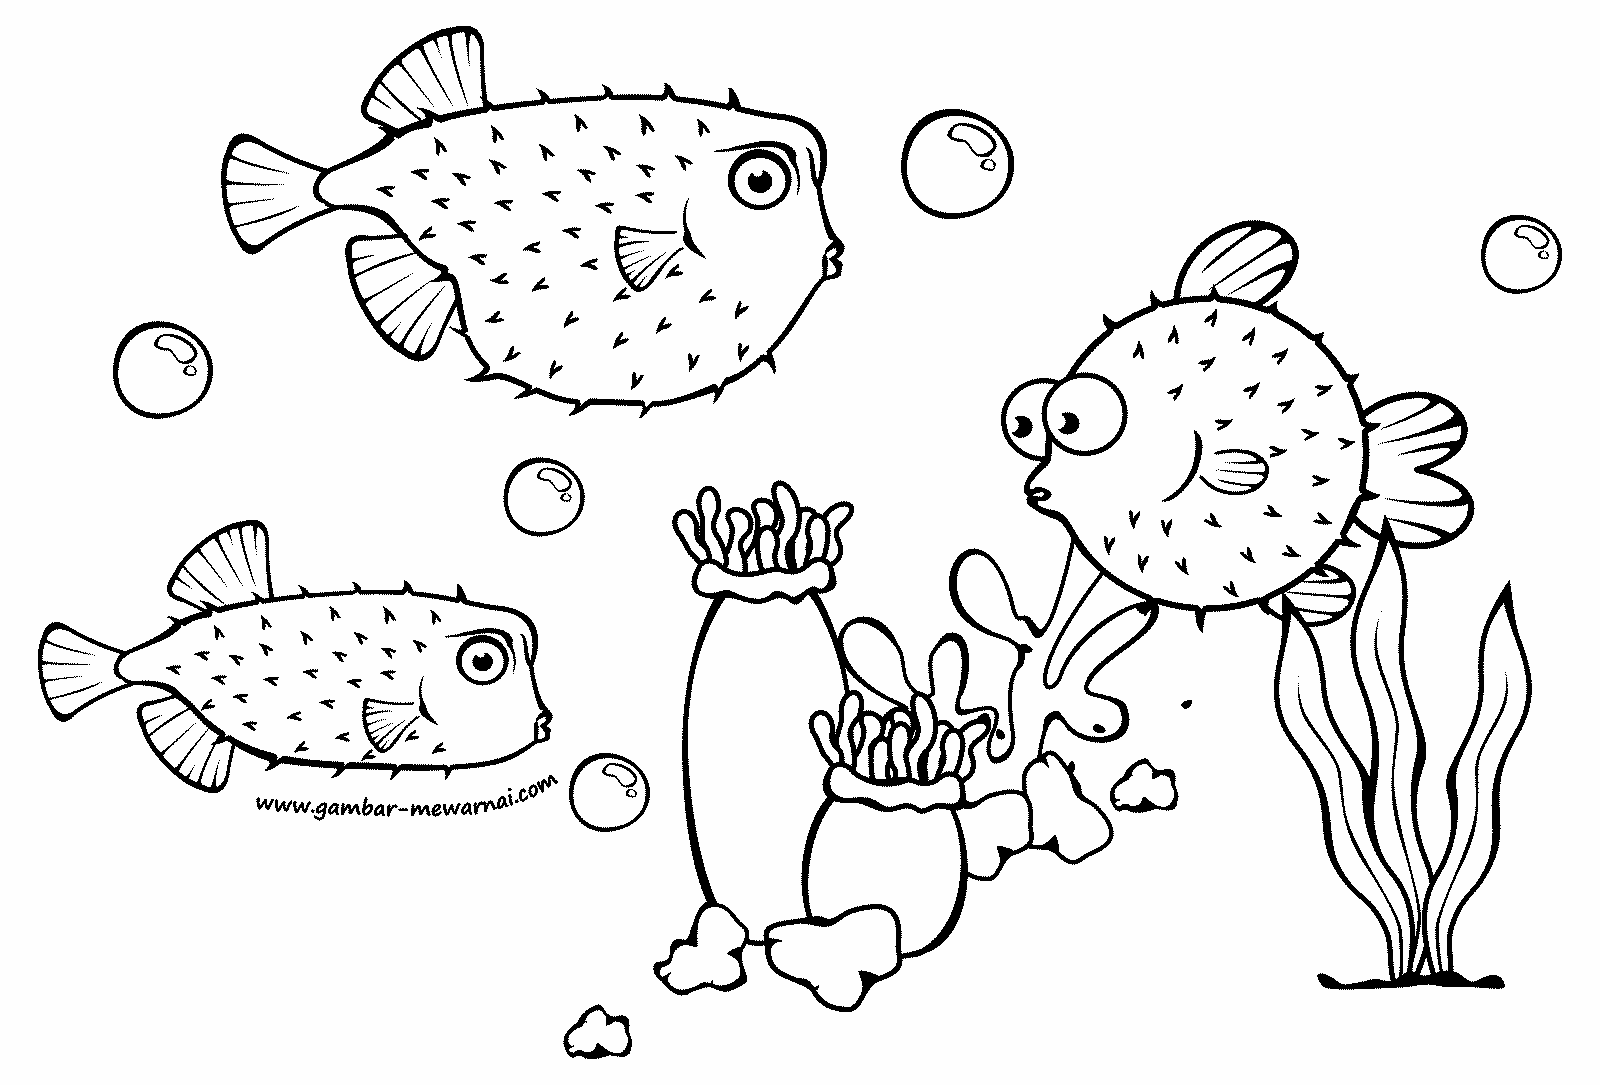 Top Gambar Kartun Hitam Putih Ikan  Kolek Gambar